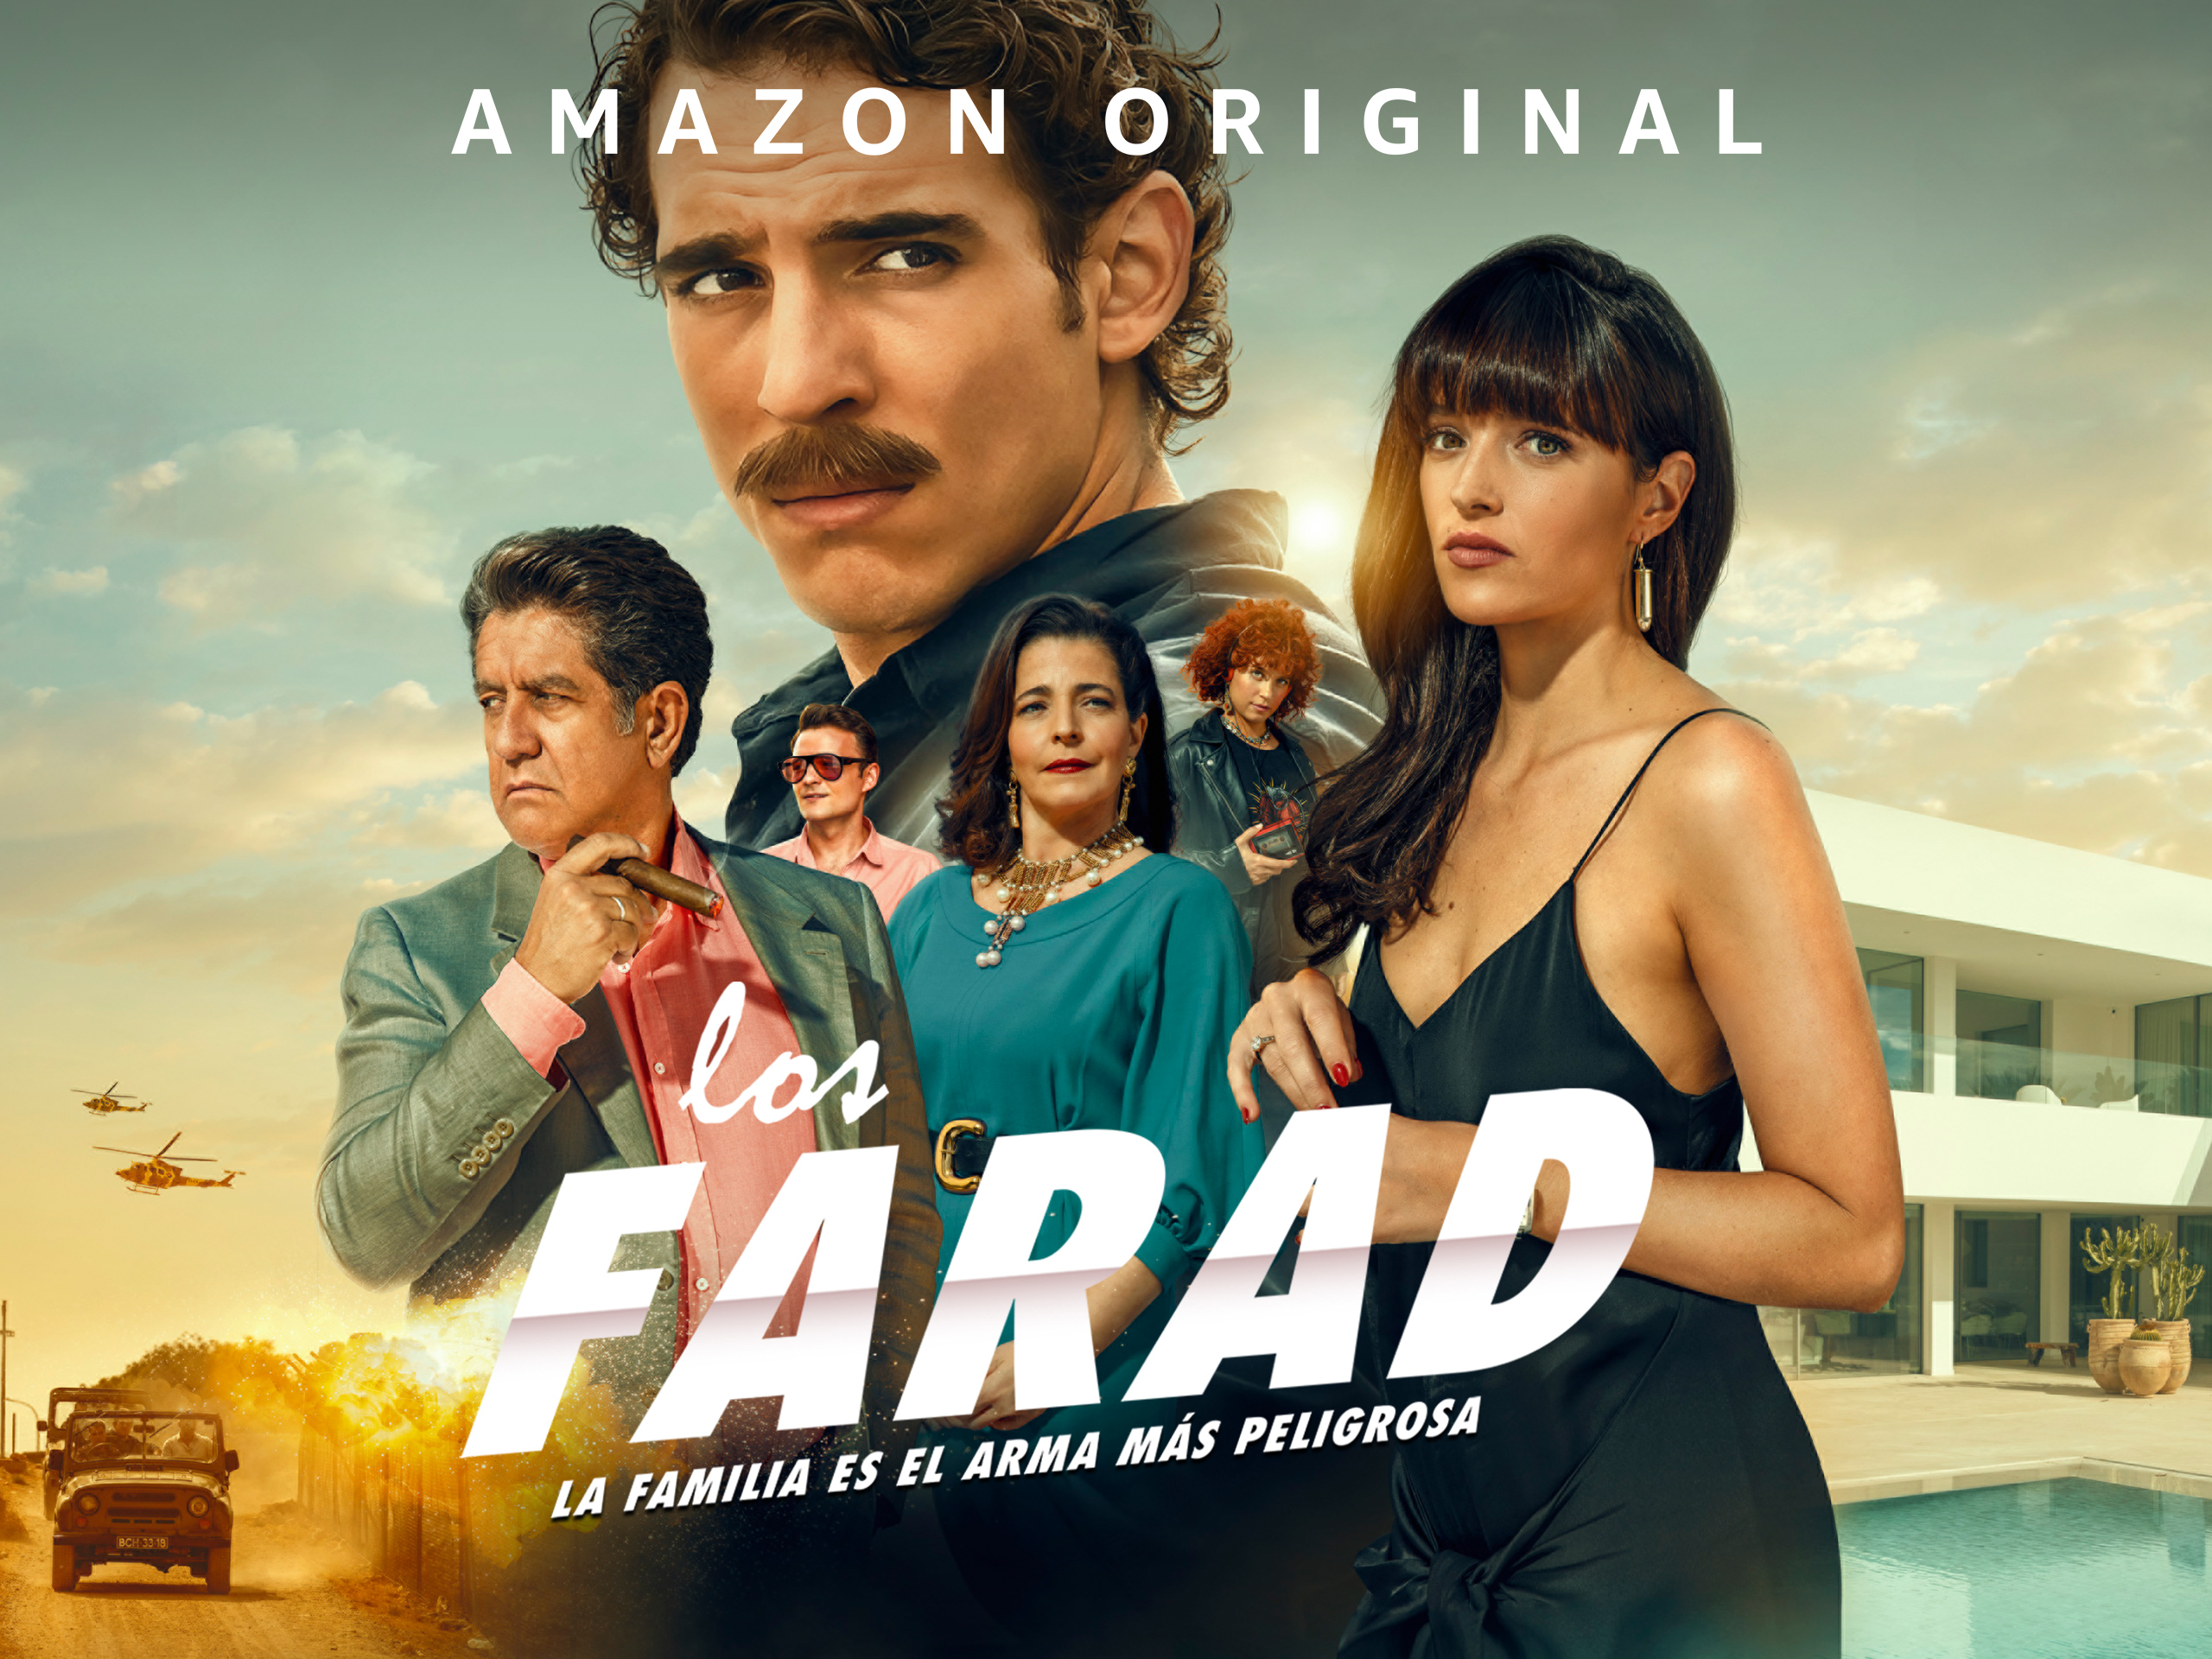 Creatividades elaboradas para el estreno oficial de la serie 'Los Farad" en Prime Video. Piezas diseñadas por Enri Mür con las fotografías de Richard Ramos.